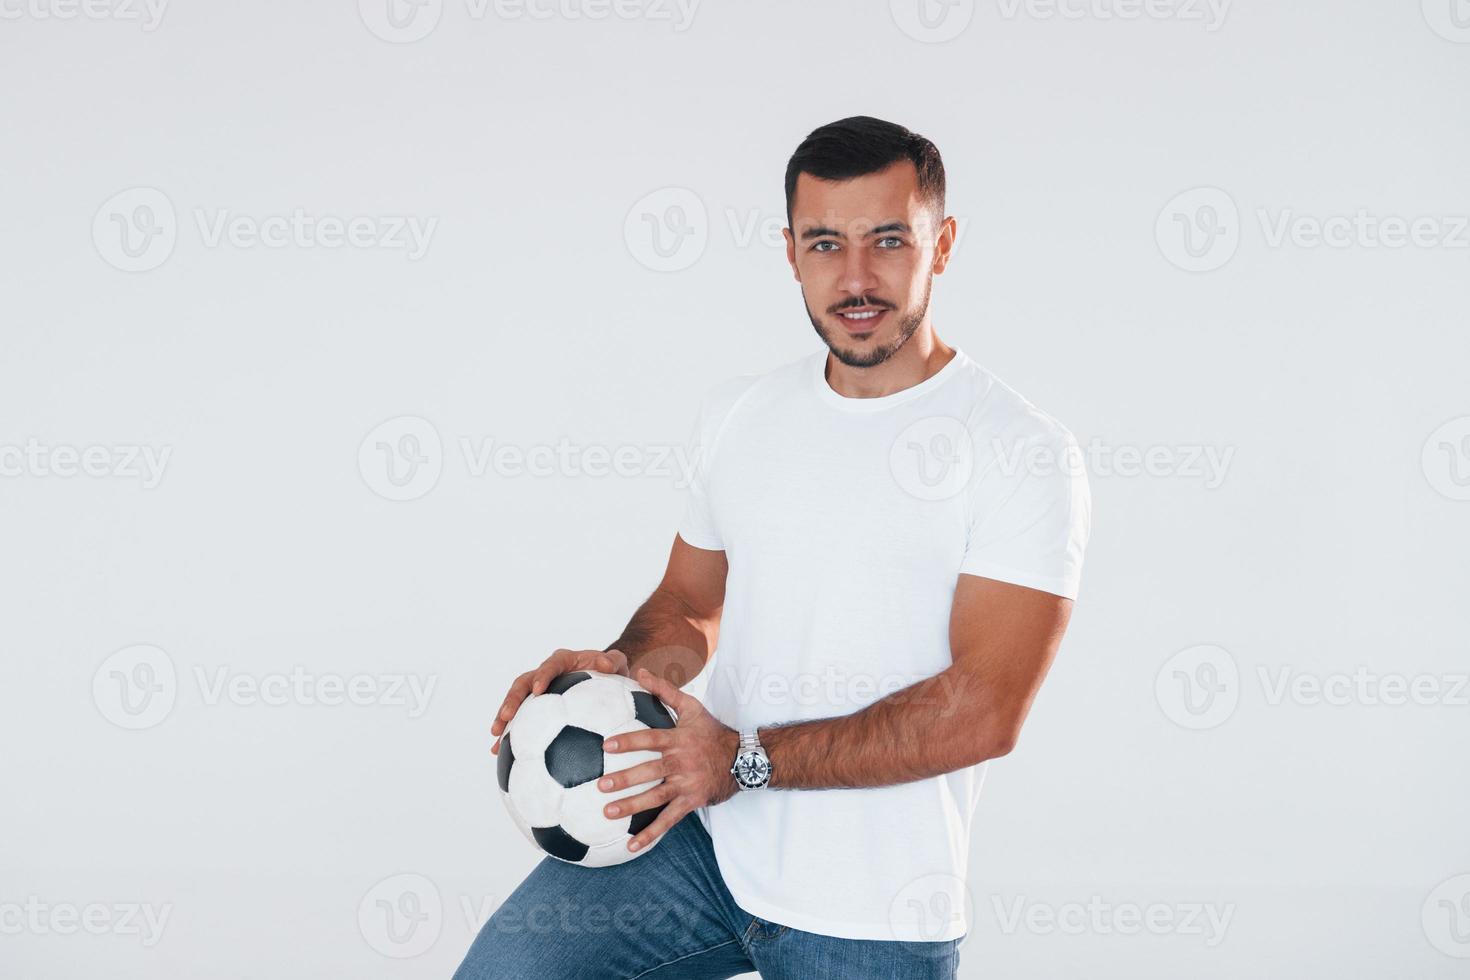 fan de football avec ballon de football. jeune bel homme debout à l'intérieur sur fond blanc photo